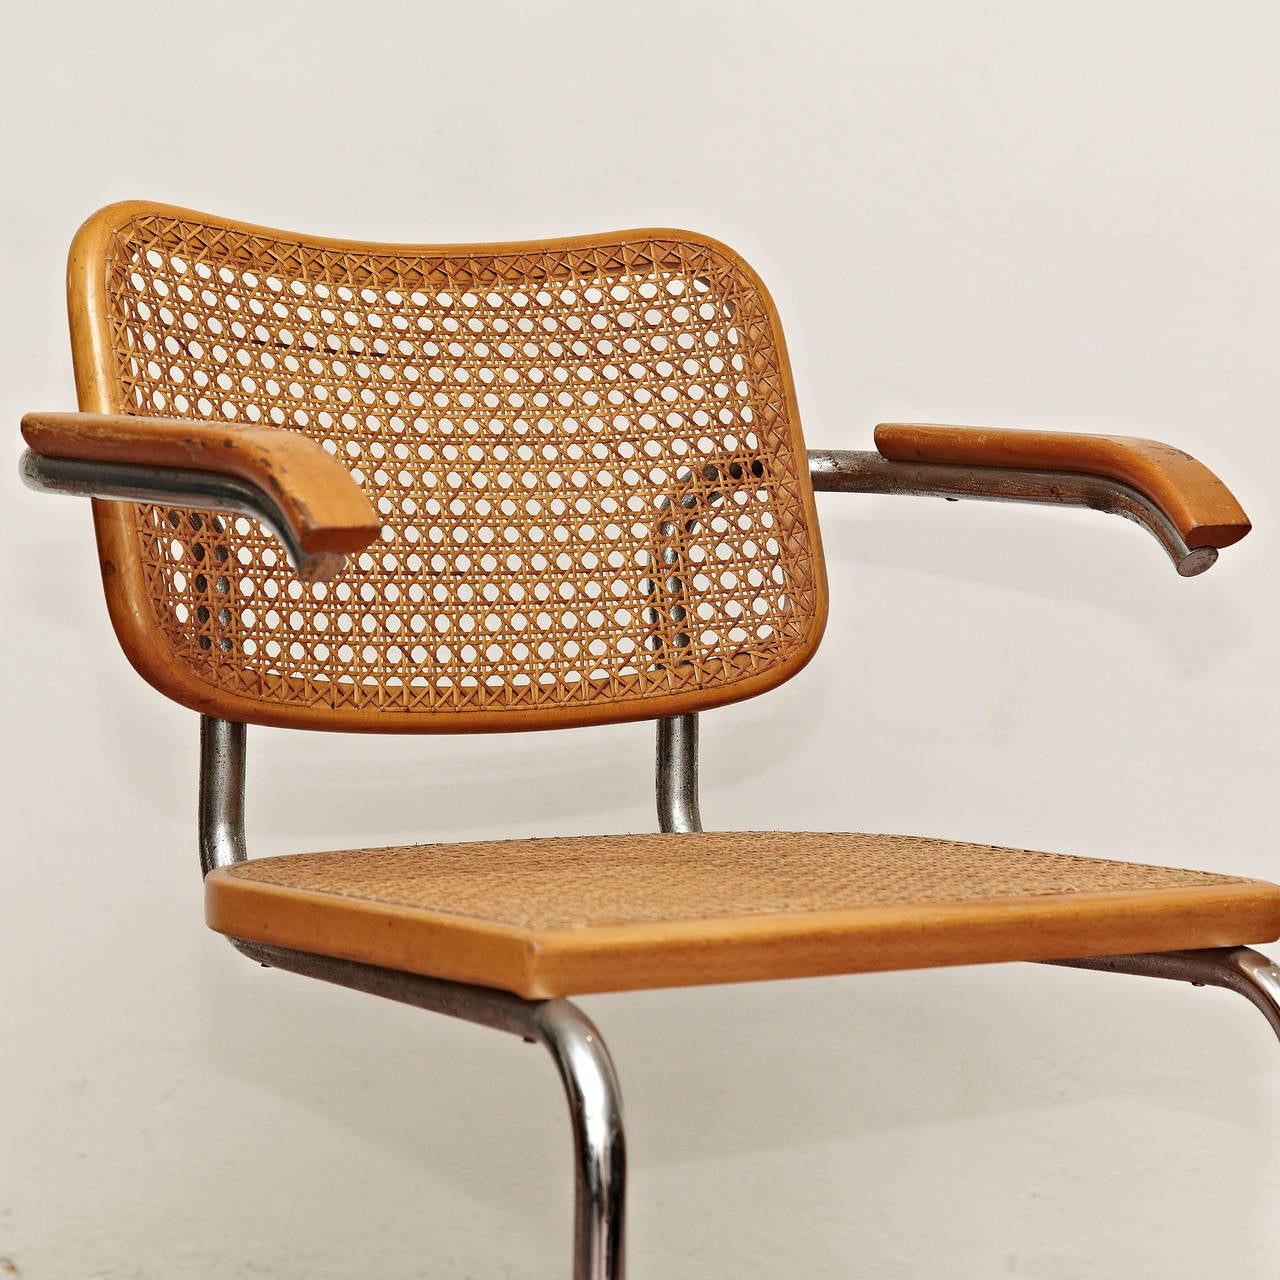 Cane Marcel Breuer Cesca Chair, circa 1950